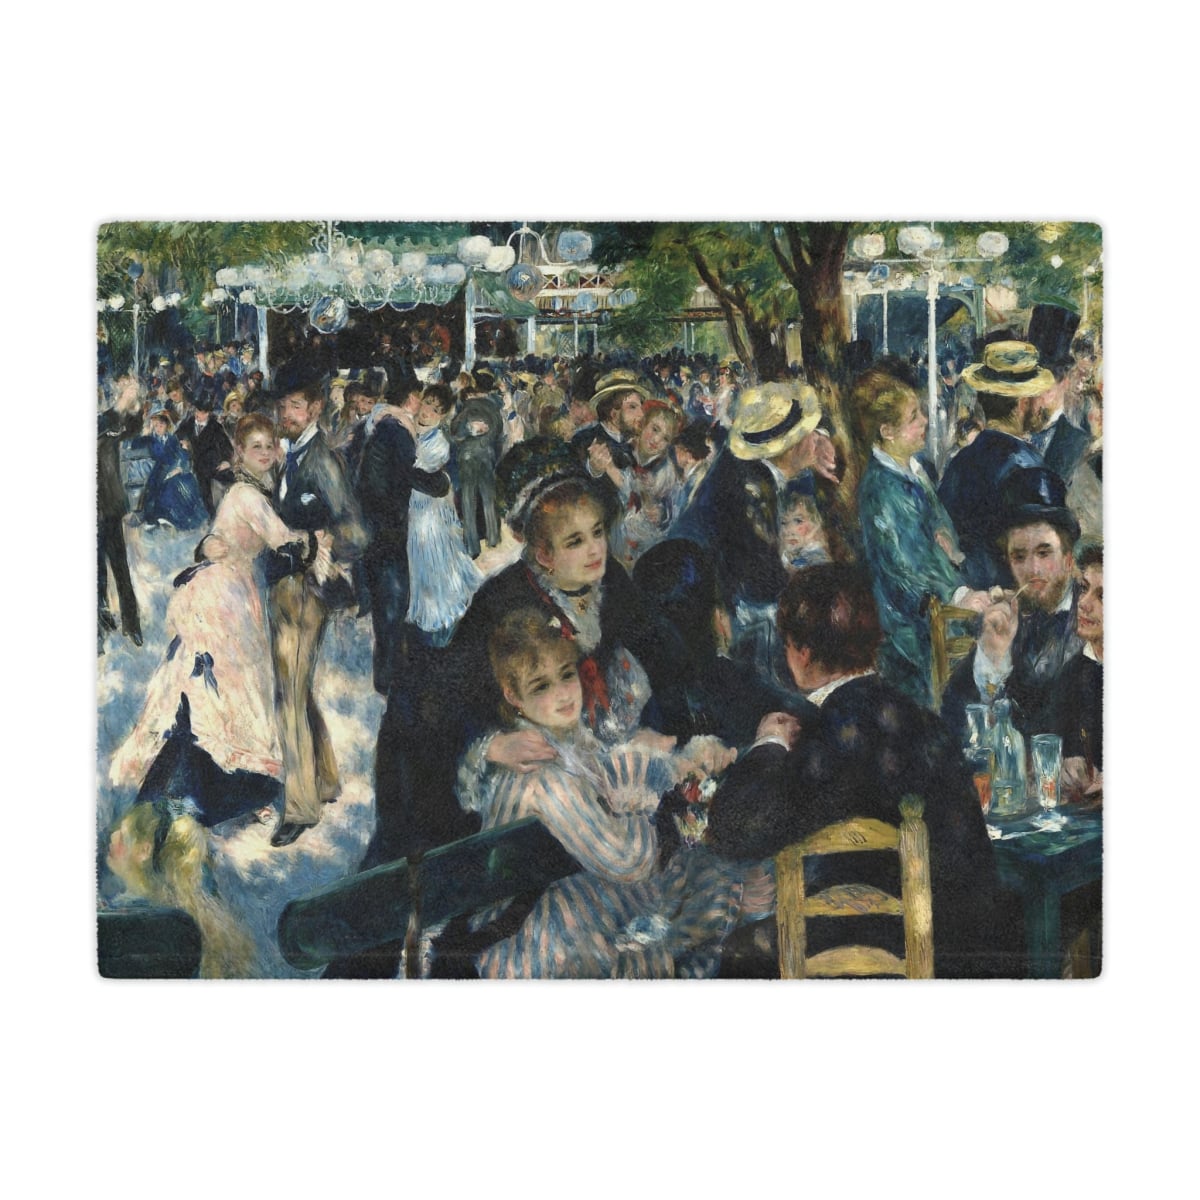 Dance at Le Moulin de la Galette Art Blanket with Auguste Renoir's iconic 1876 painting